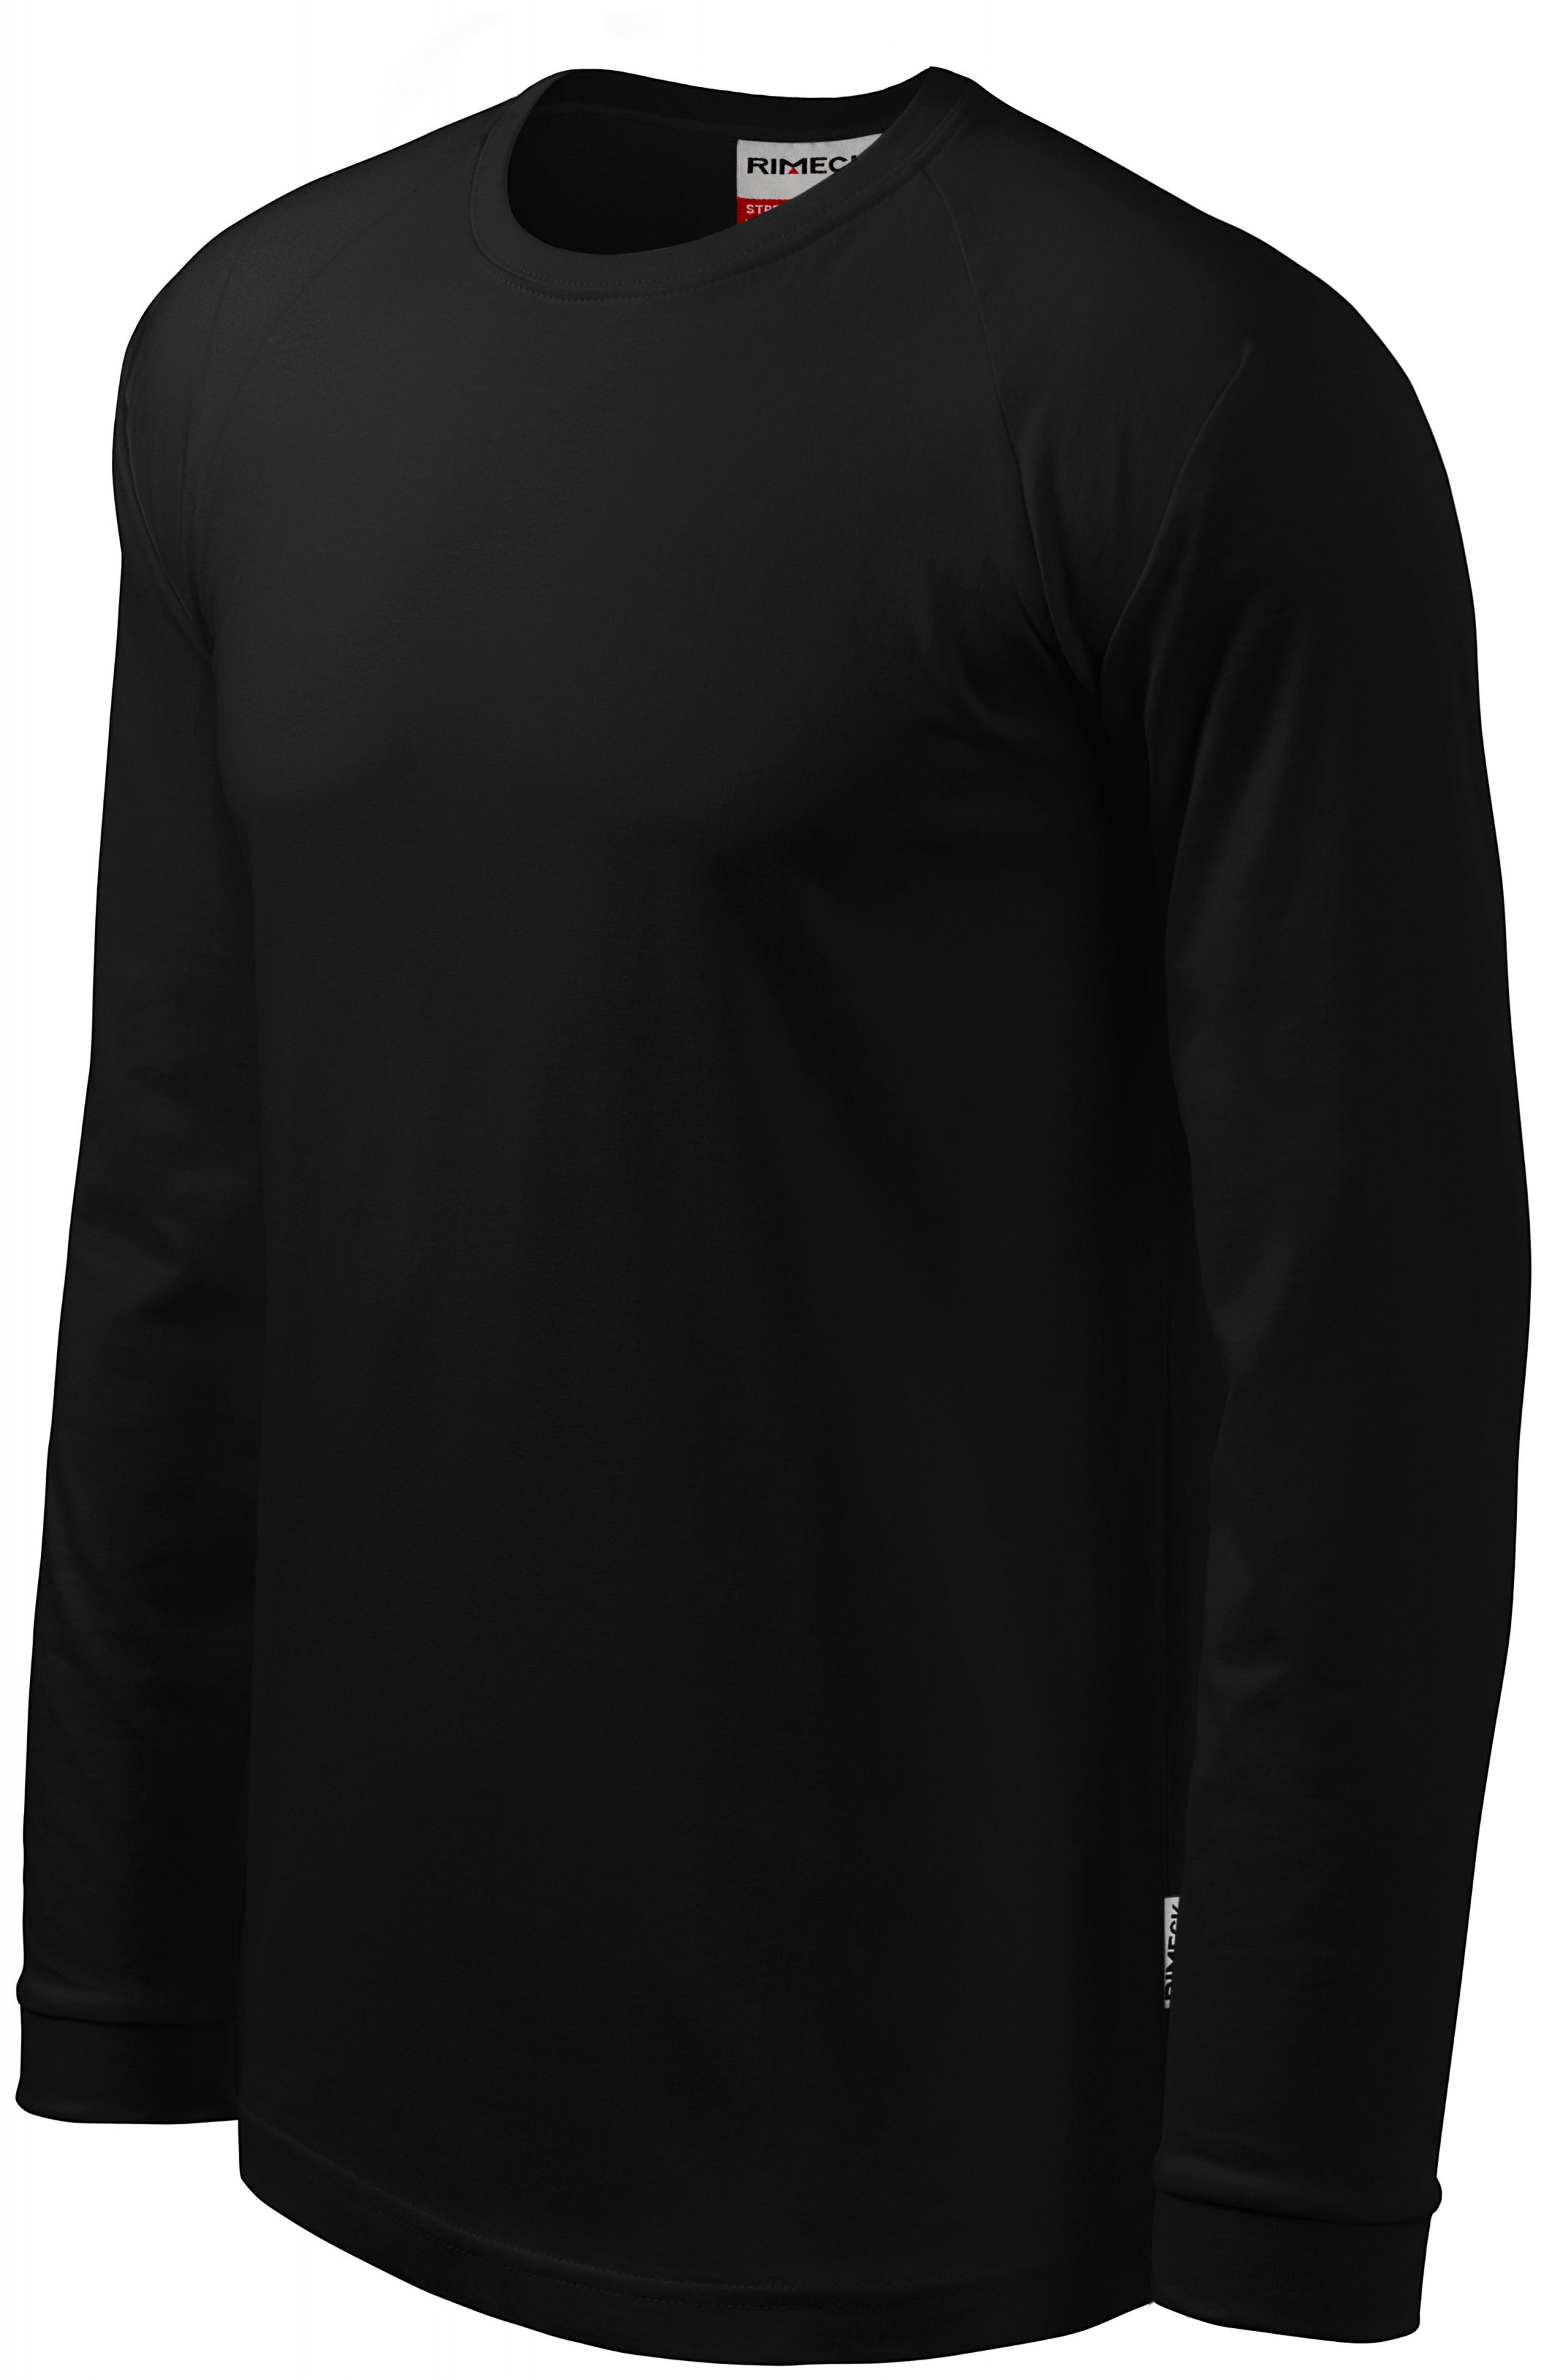 Pánske tričko s dlhým rukávom, kontrastné, čierna, L